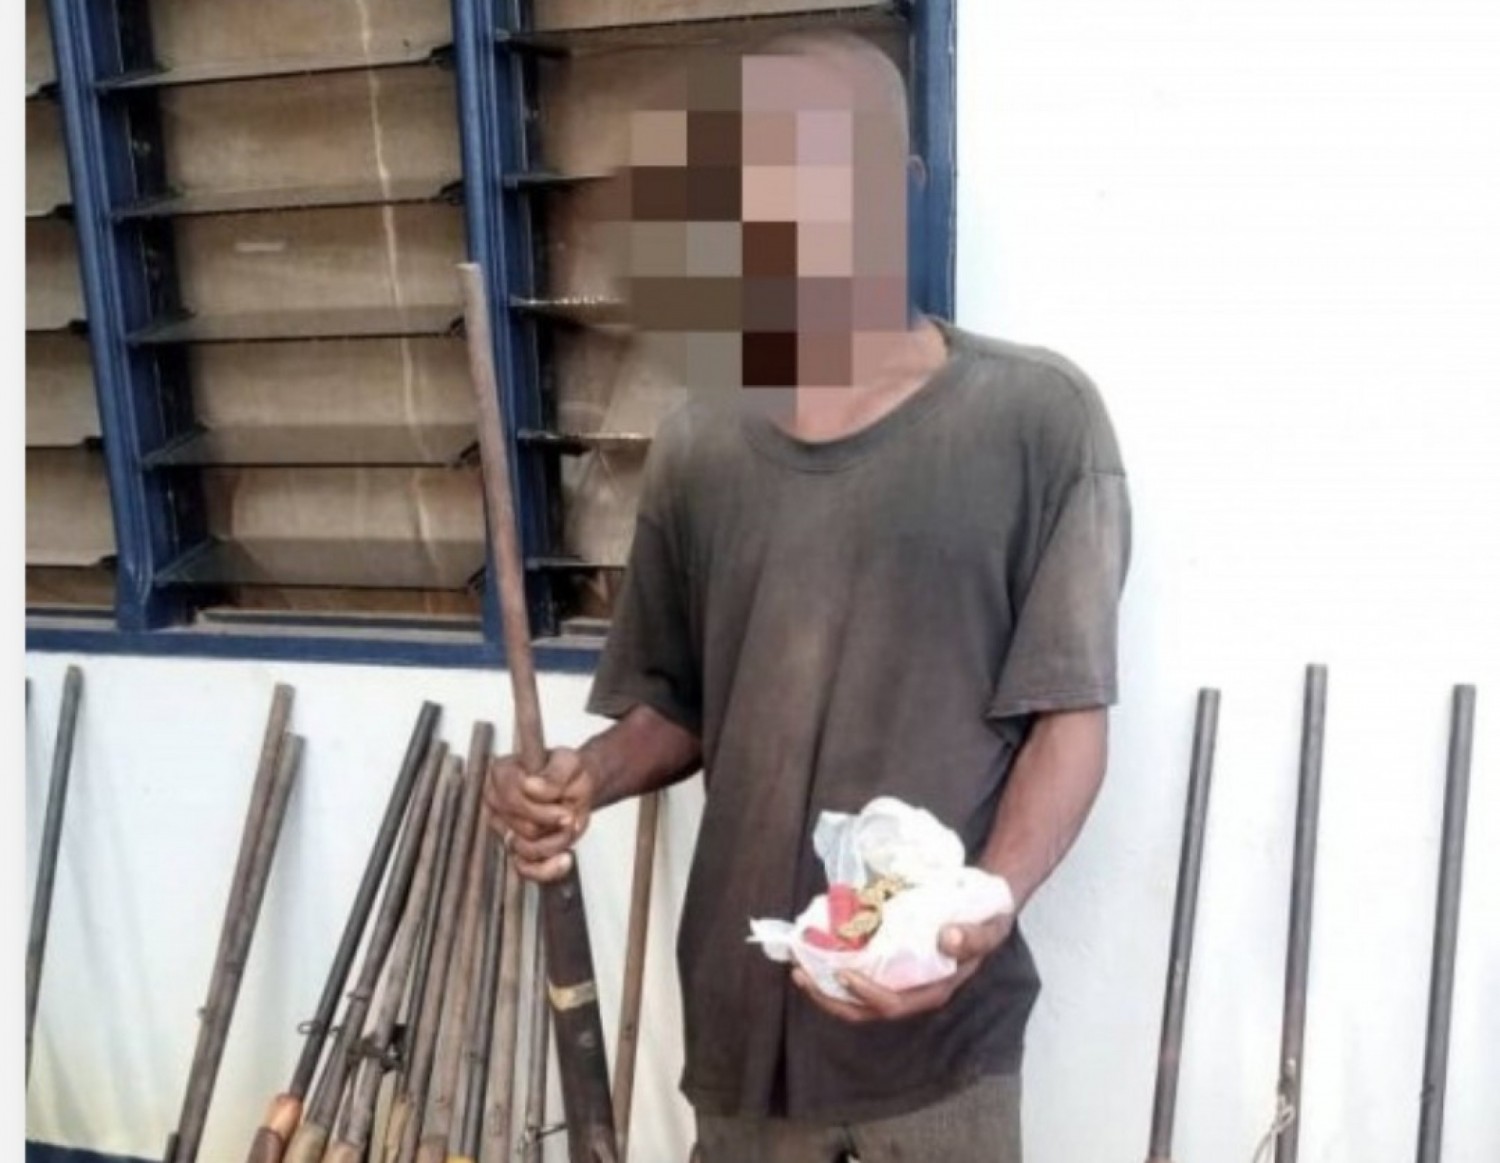 Côte d'Ivoire : Démantèlement d'un atelier clandestin de fabrication d'armes à Dabou, des armes saisies et 01 individu interpellé